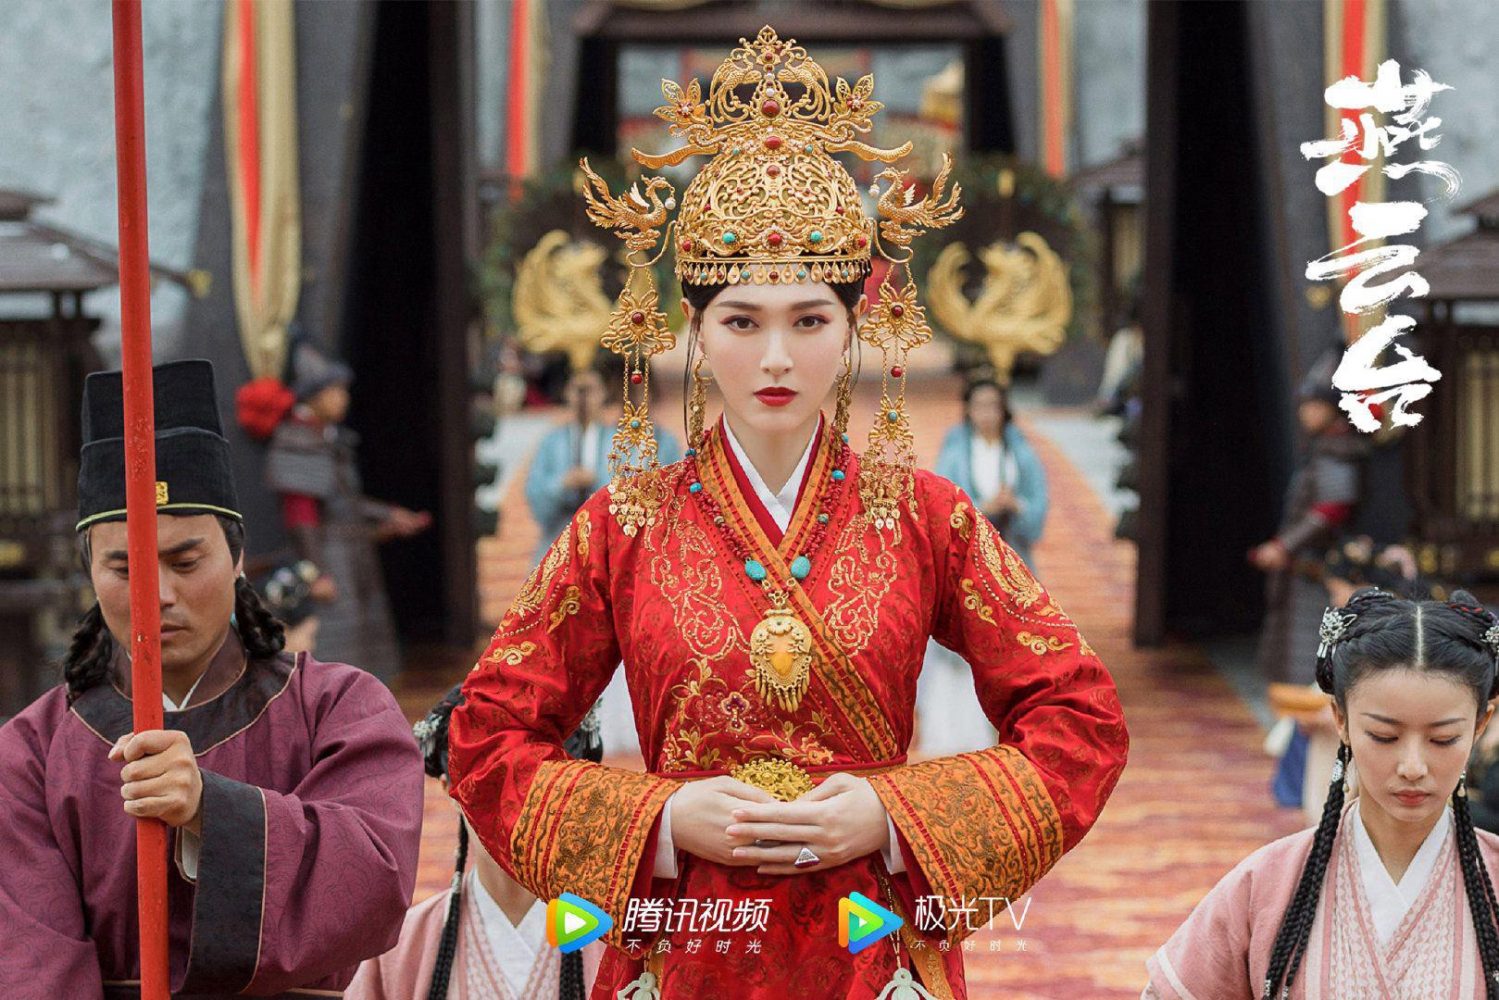 Phim mới của Đường Yên: Yến vân đài - The Legend of Xiao Chuo (2020)